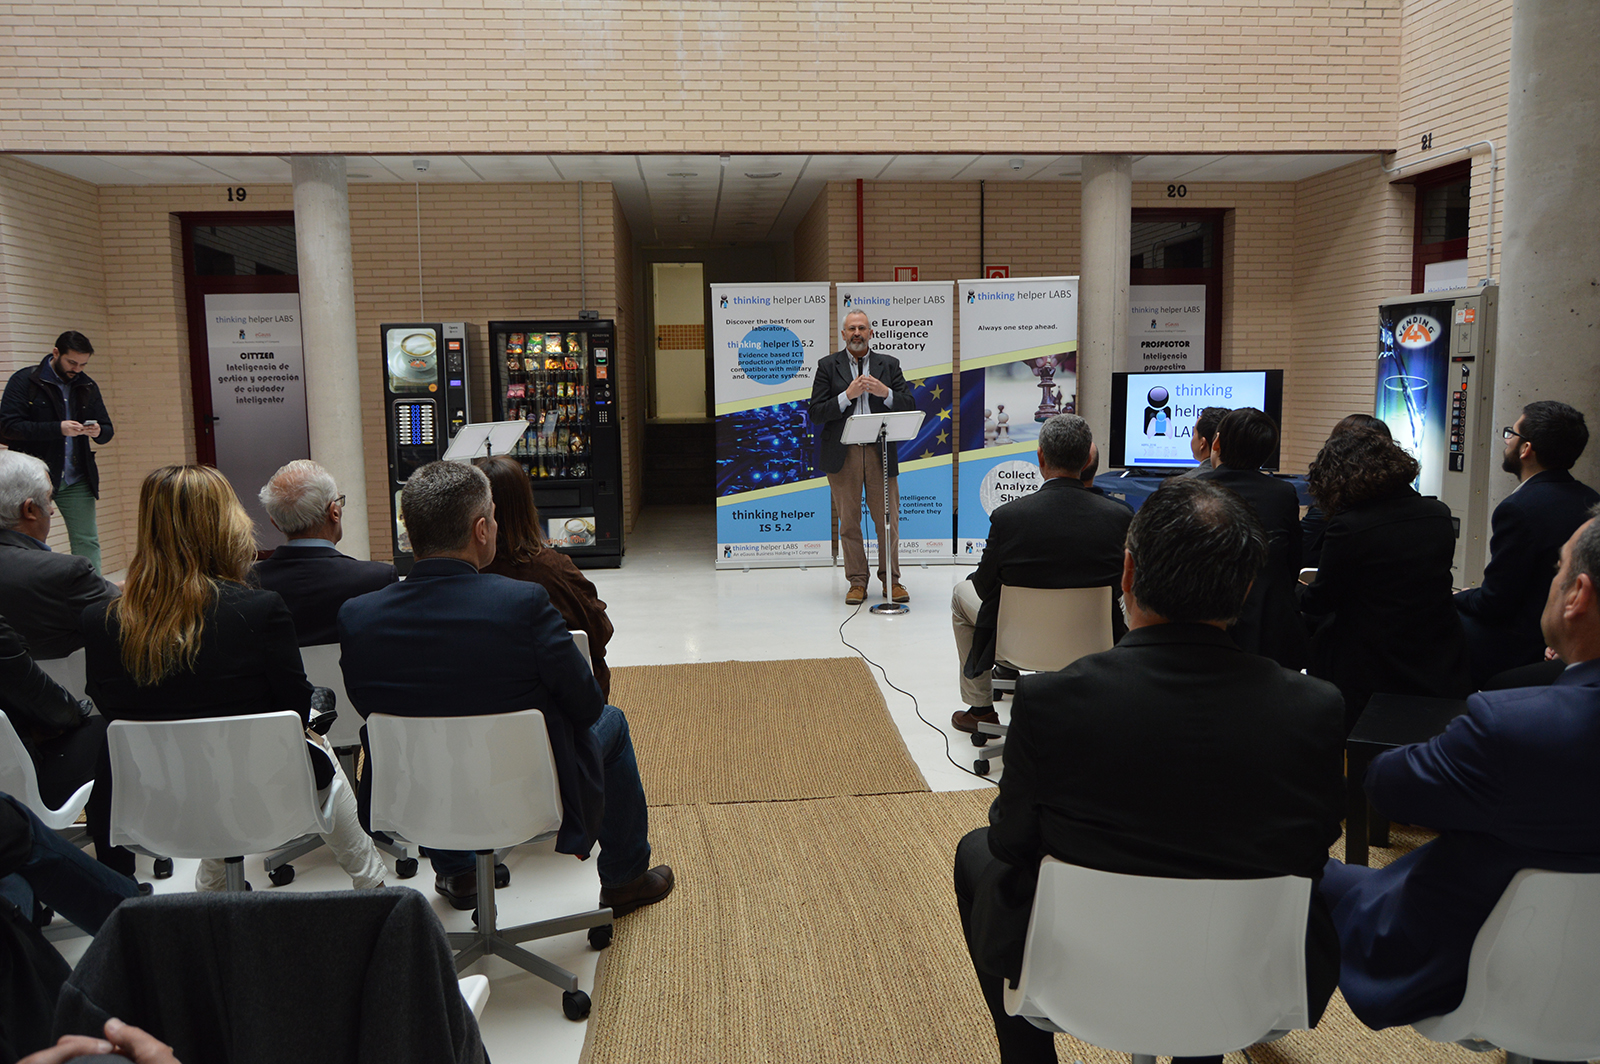 Momento de la presentación a cargo del Presidente, Raúl Mata. Foto: Ayuntamiento de Seseña.